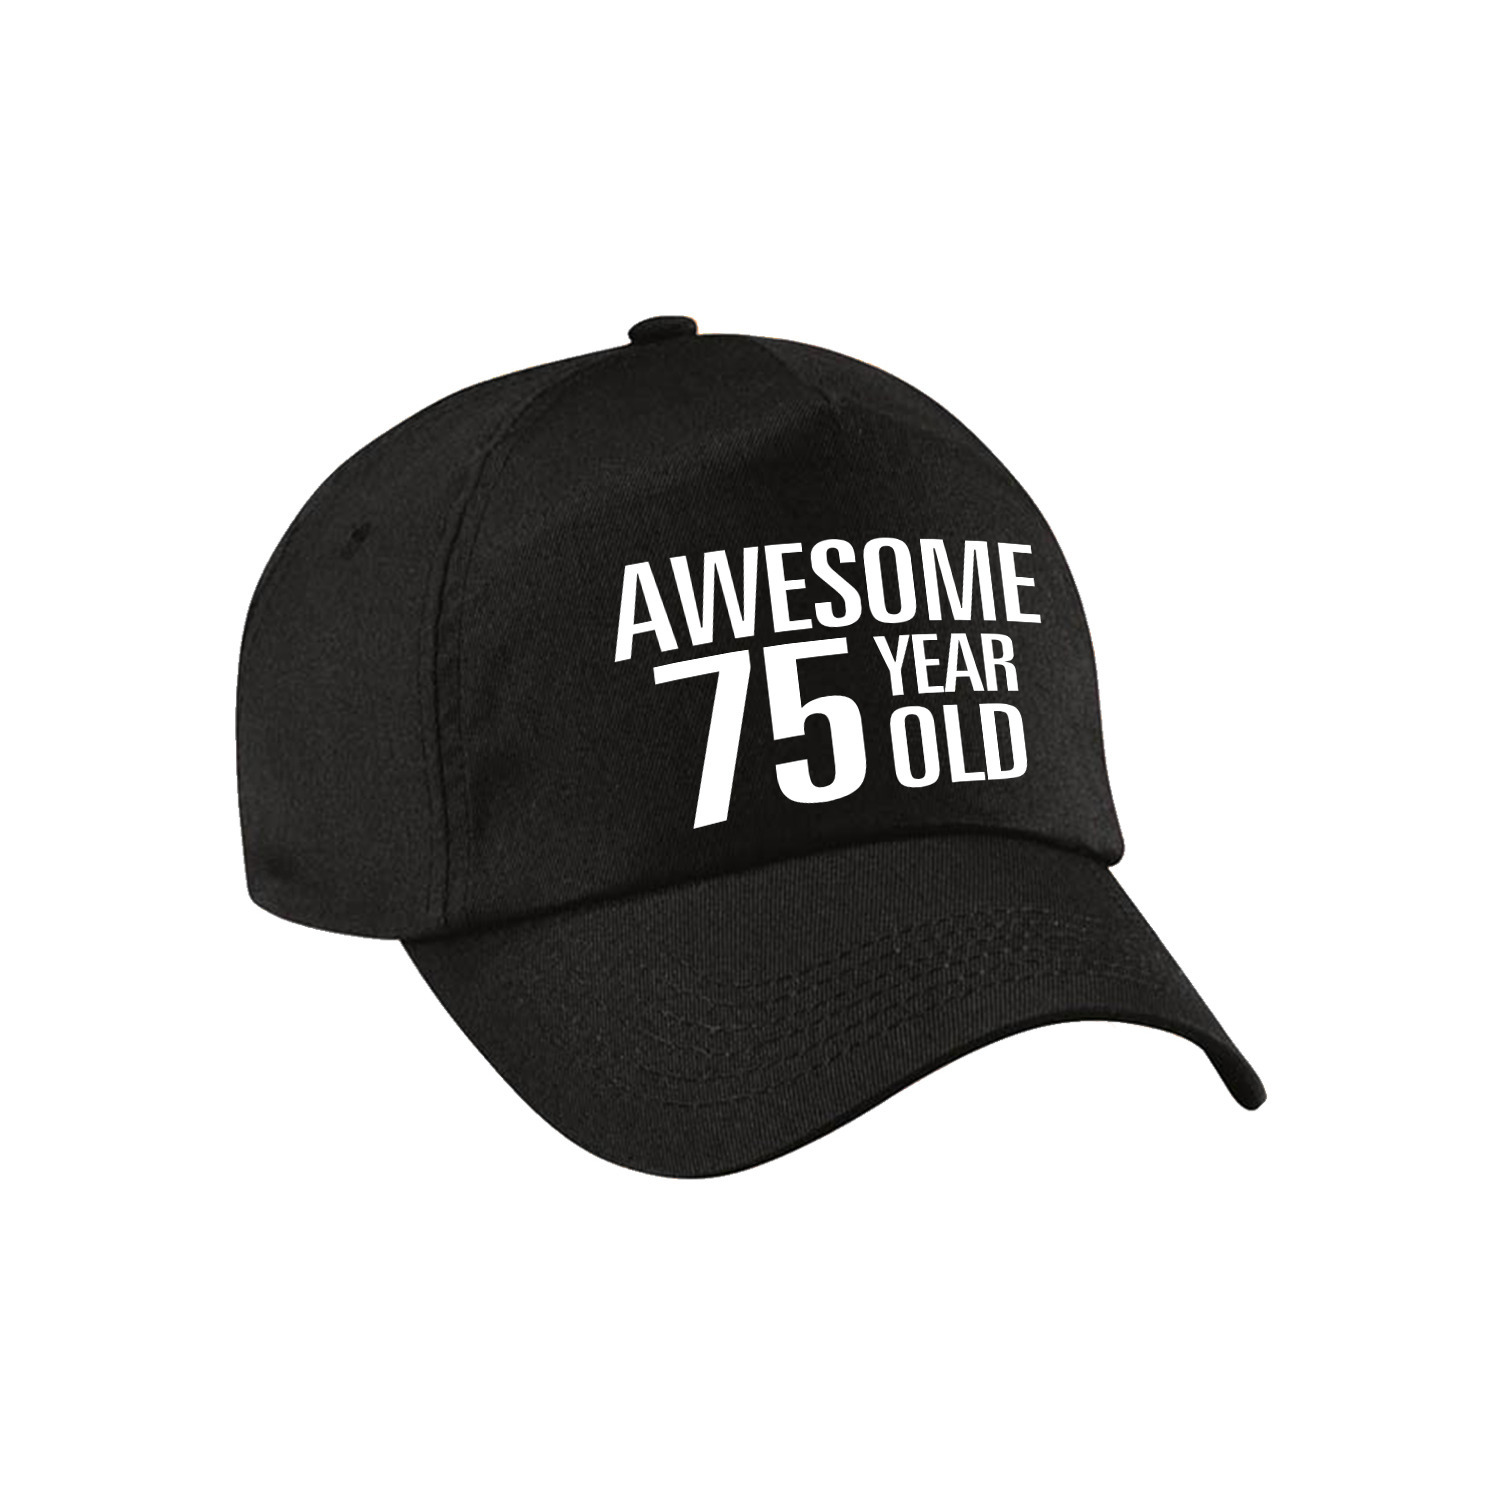 Awesome 75 year old verjaardag pet / cap zwart voor dames en heren